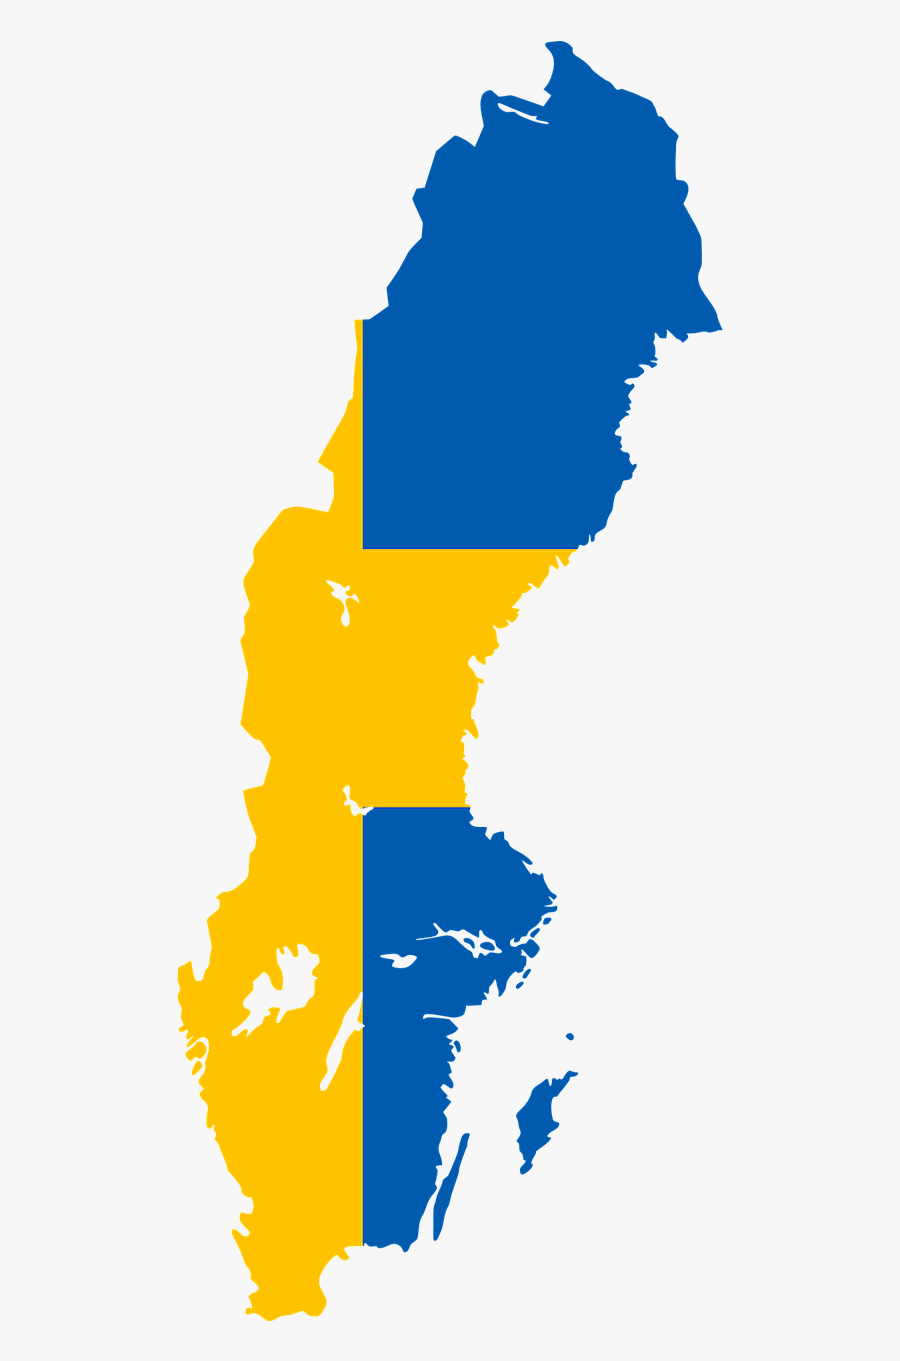 Sweden Flag Map Png, Transparent Clipart